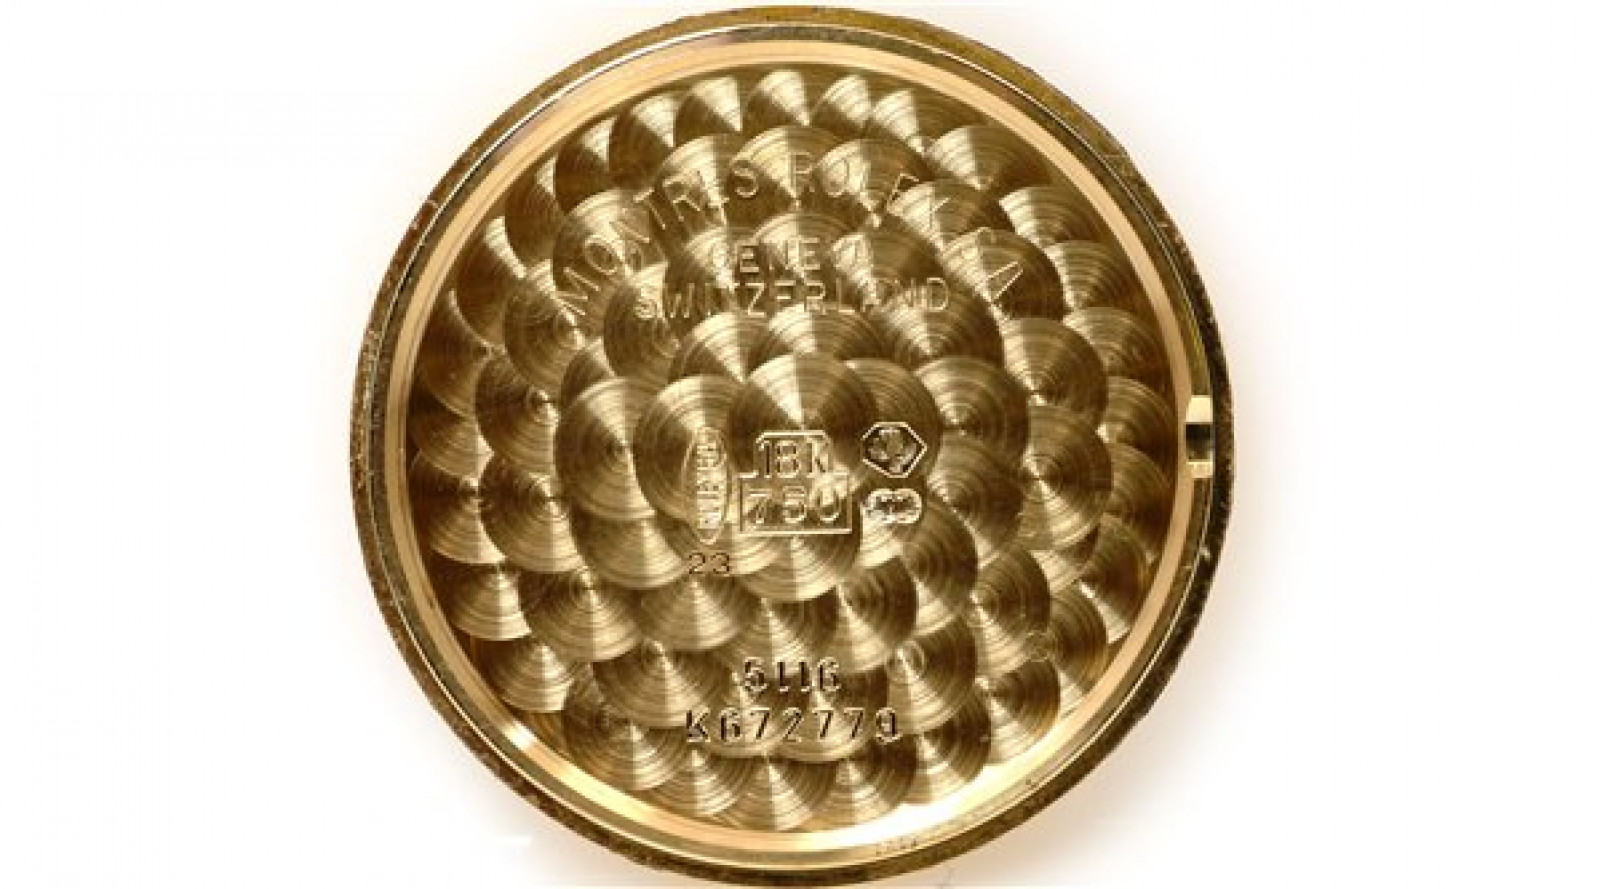 Rolex Cellini 5116 Gold 2001